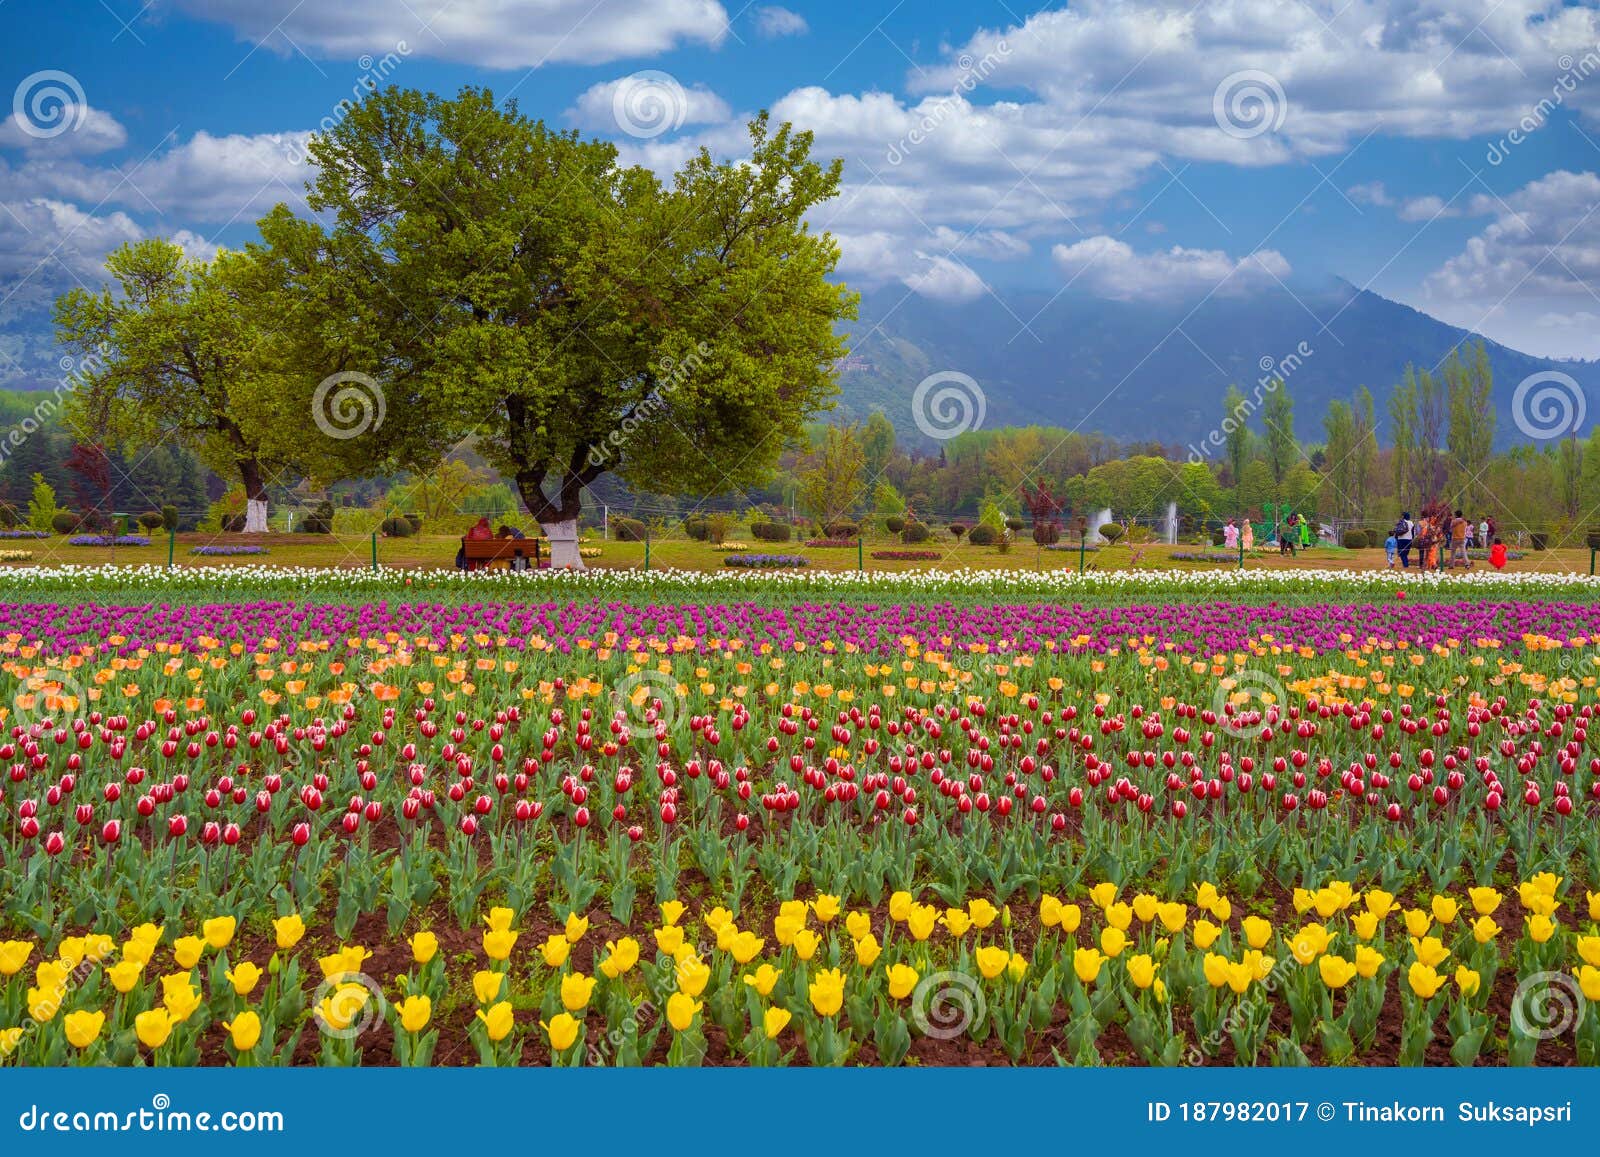 beautiful tulip flowers at eden in indira gandhi memorial tulip garden srinagar is asia largest such garden at srinagar, jammu and